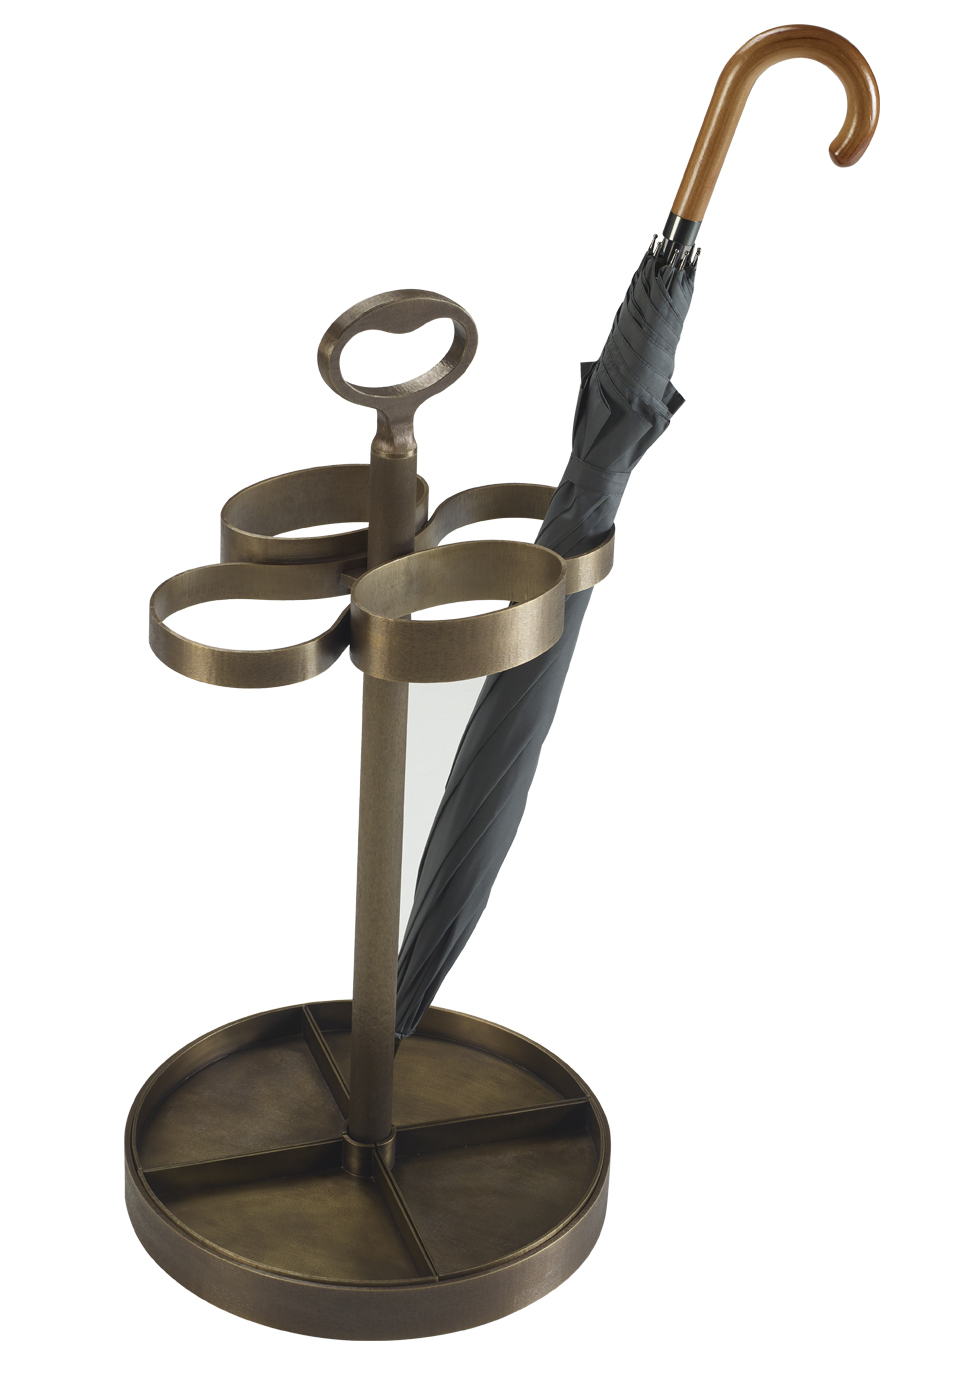 Fred is a bronze umbrella stand from Promemoria's catalogue | Promemoria